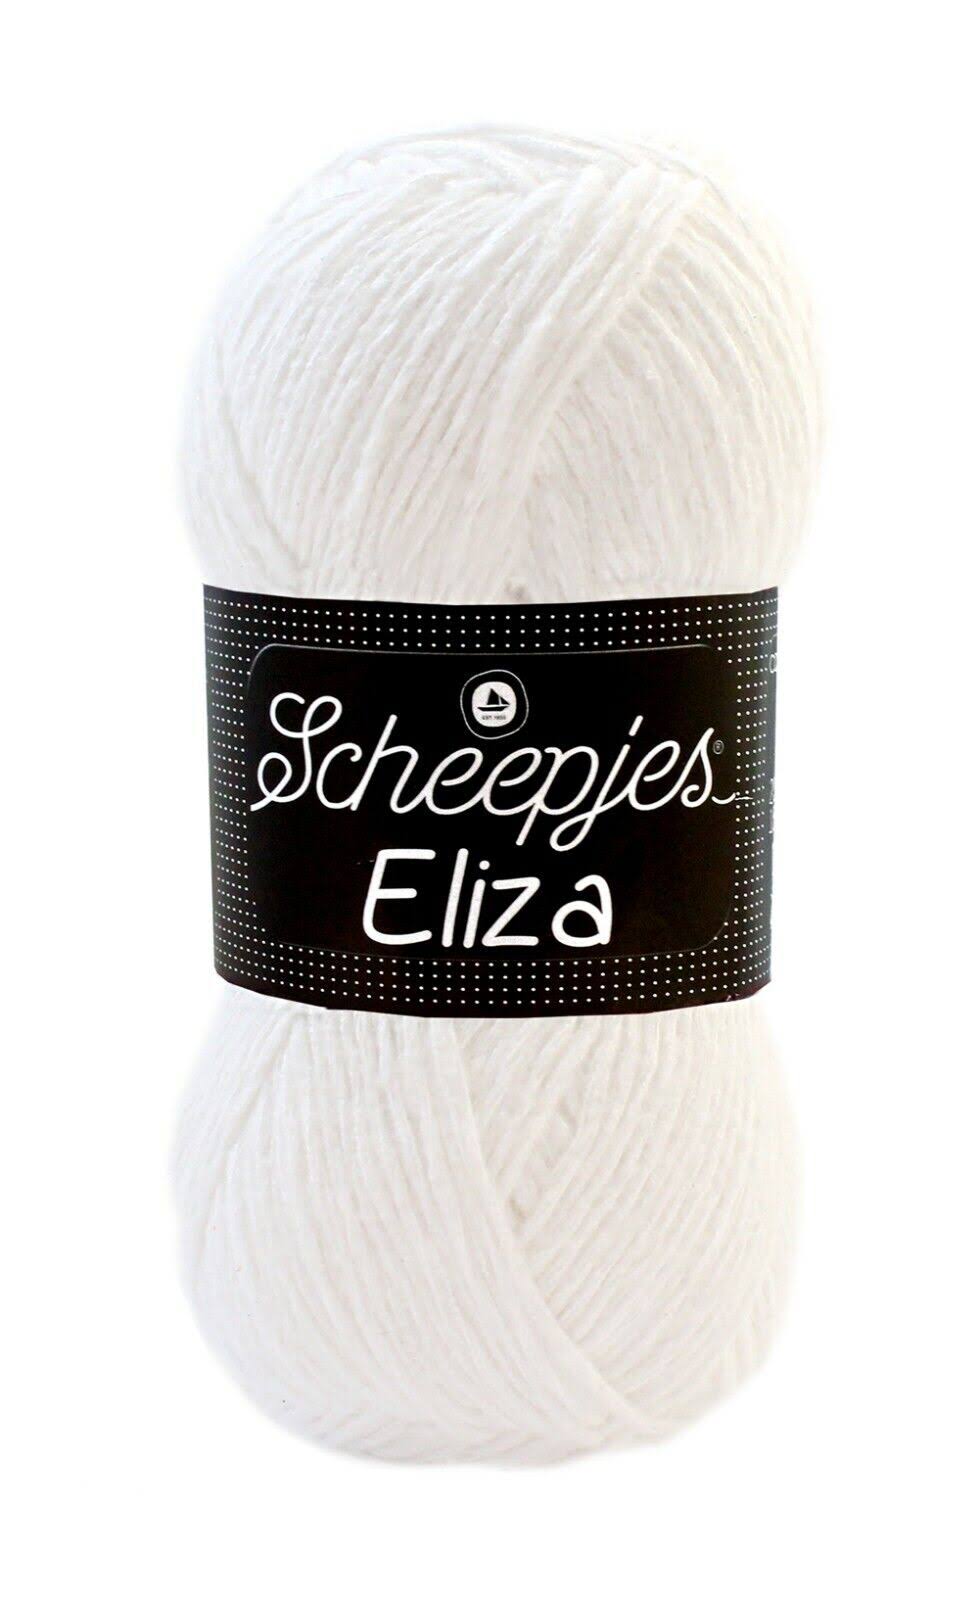 Scheepjes Eliza DK Weight White Yarn 100g - 218 Bobtail White